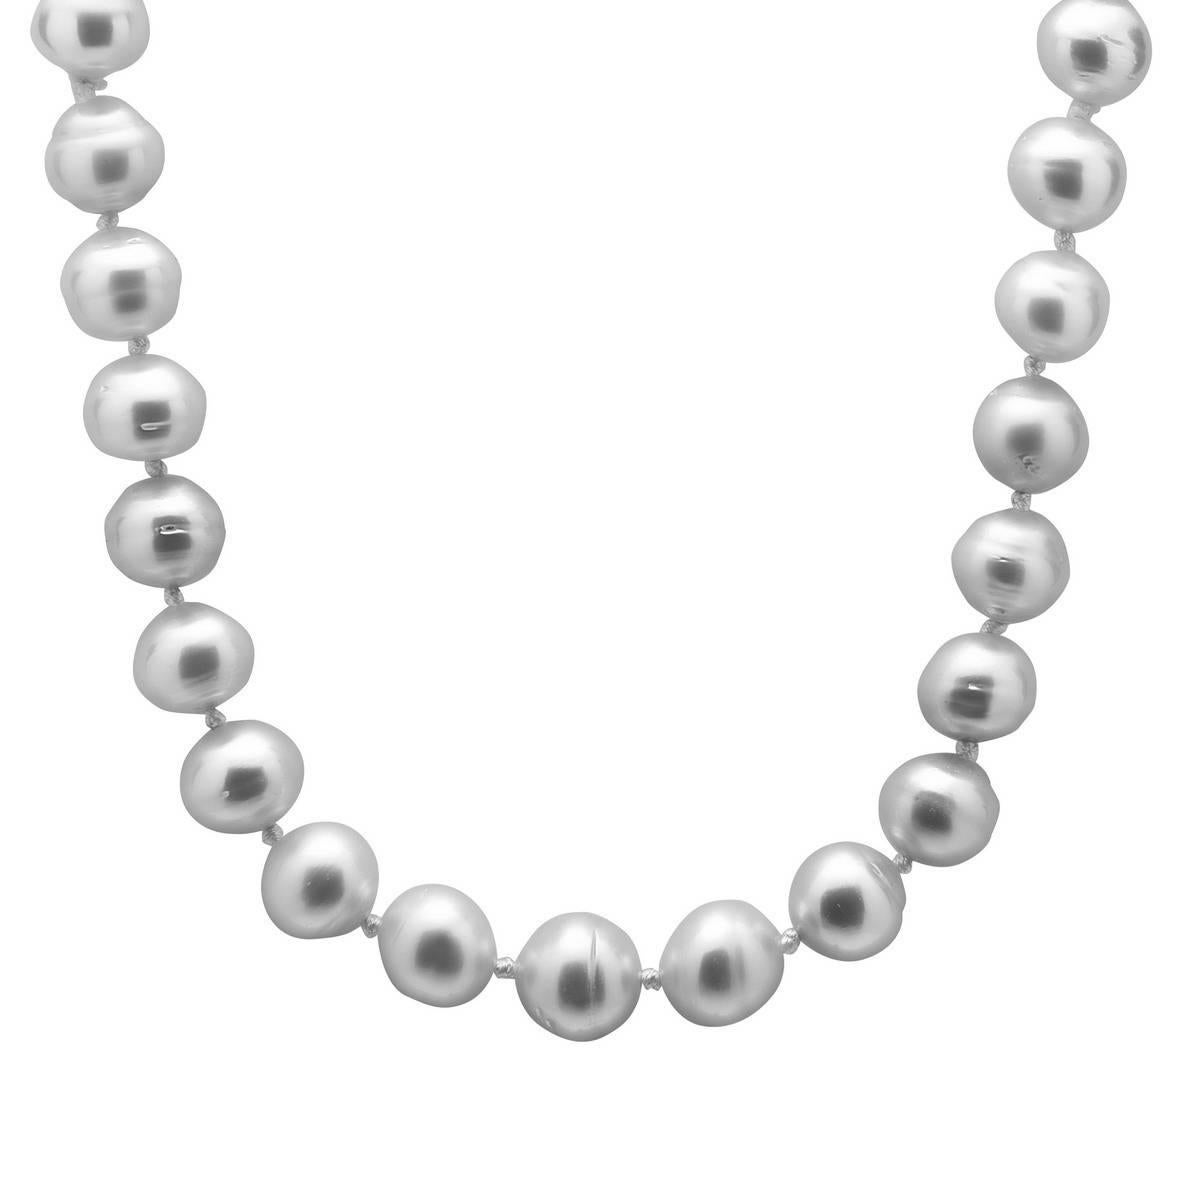 Elegant collier de perles des mers du Sud avec fermoir boule en or au dos, enfilé sur un fil blanc. La taille des perles varie de 14 à 17 mm. 

18kt : 1,75g
Perles : 653,75cts

